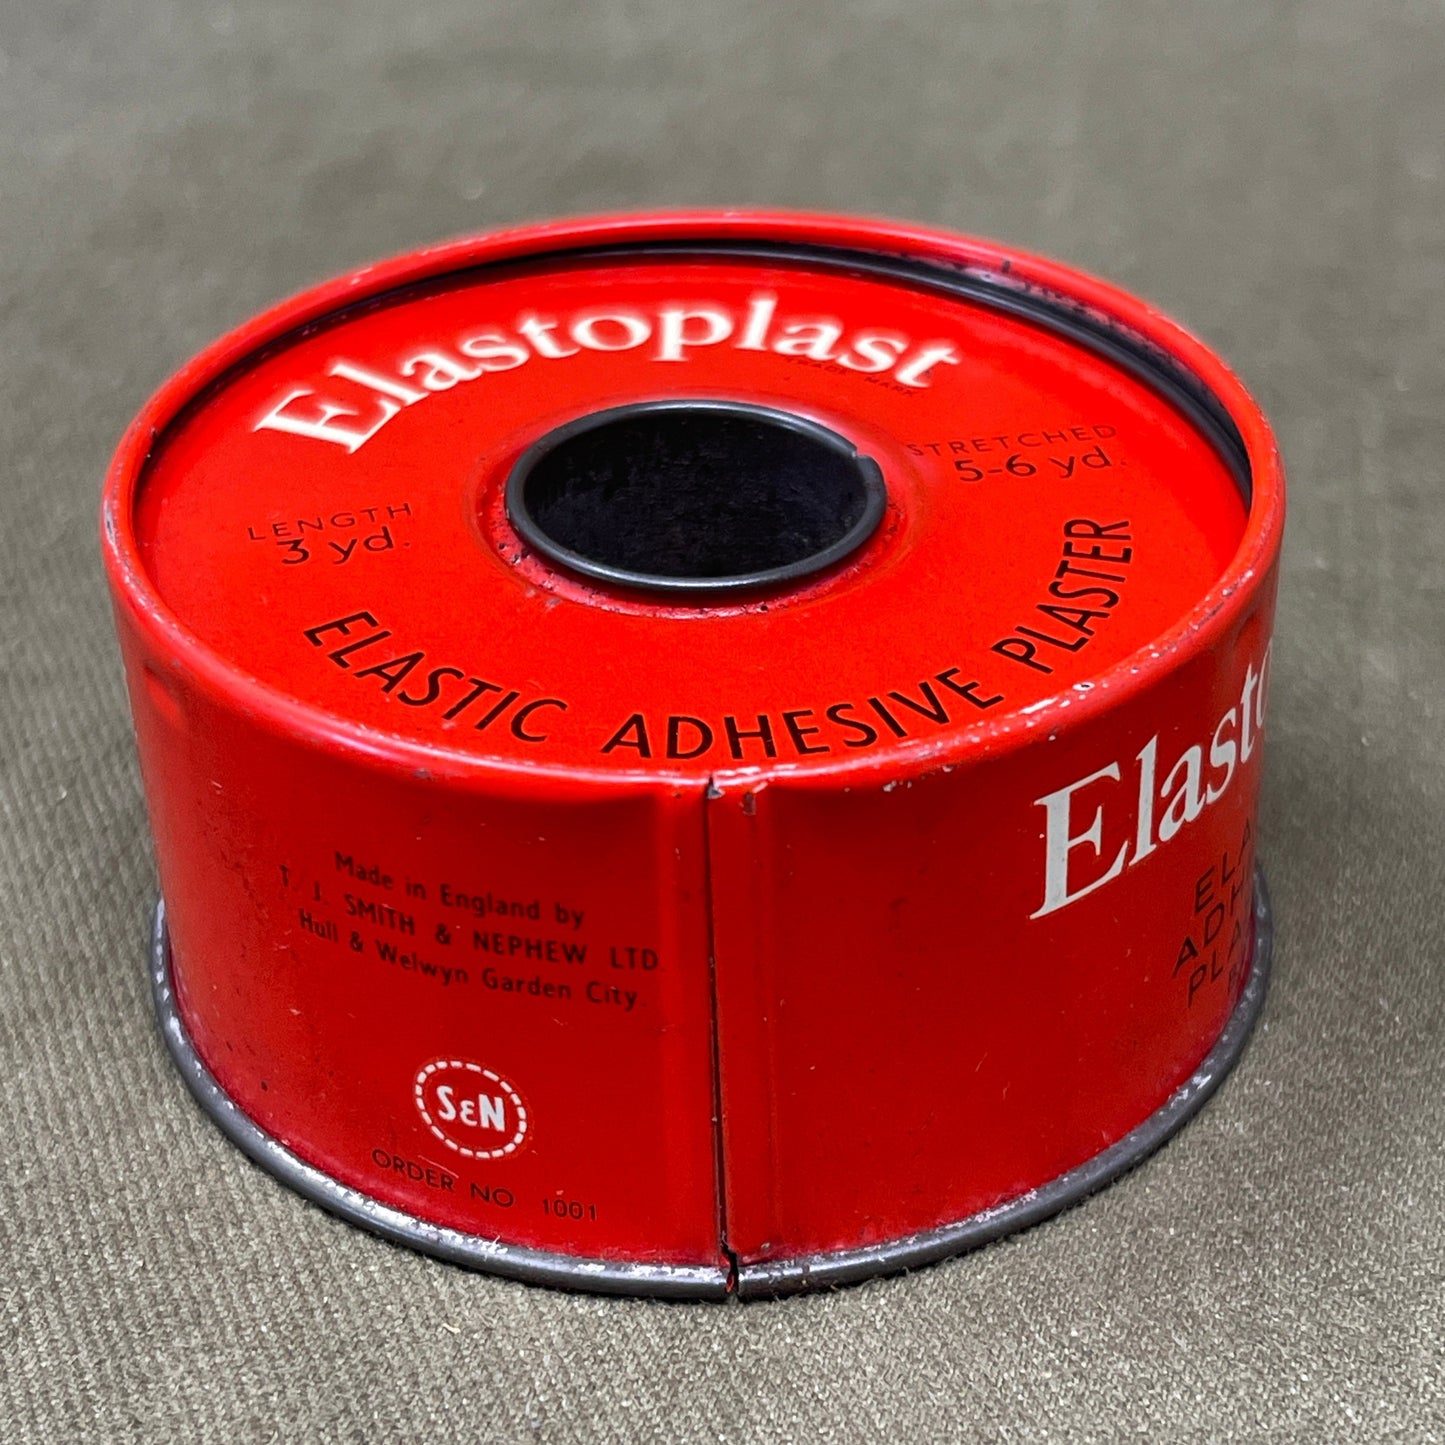 Vintage Elastic Adhesive Plaster Elastoplast 